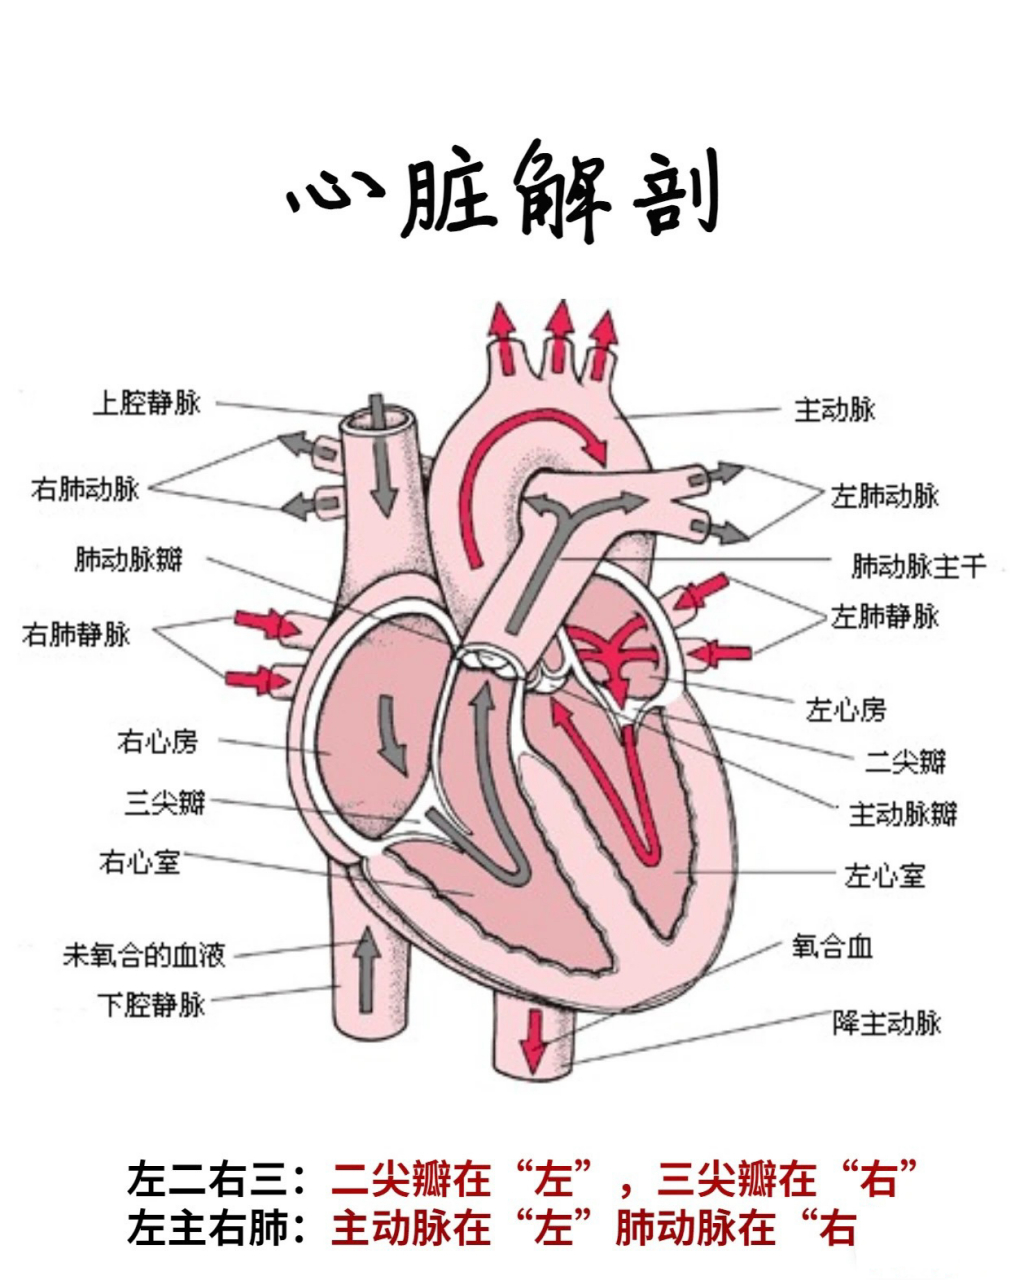 心脏解剖图0202 02心脏解剖图,可以收藏 血液在体内由静脉流入